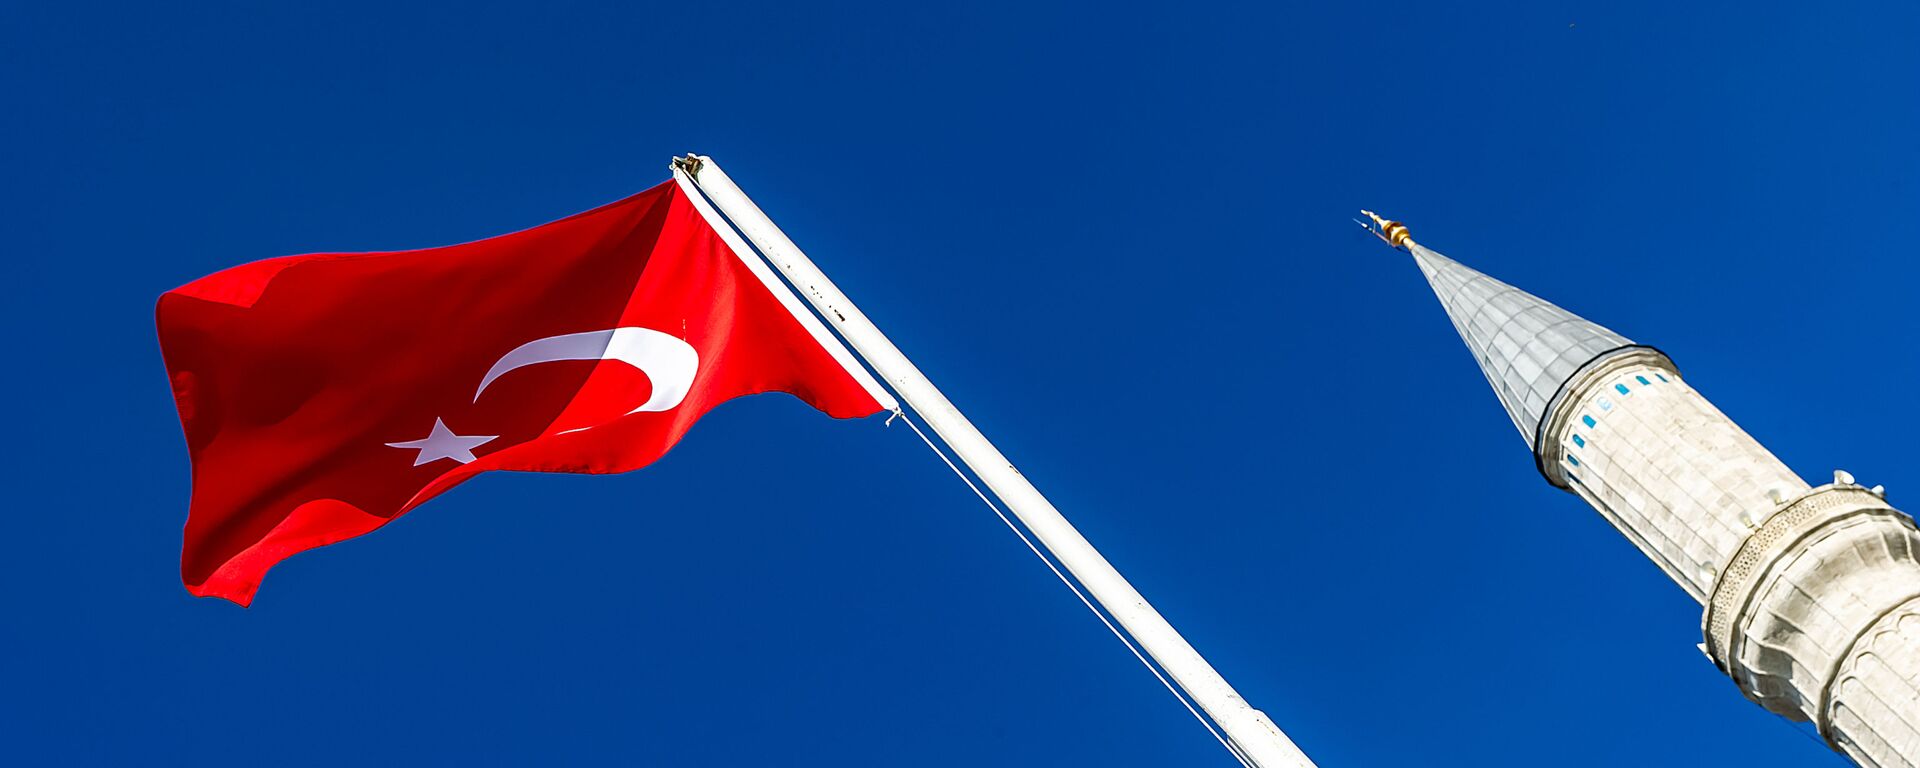 Флаг Турции и минарет в Стамбуле, архивное фото - Sputnik Lietuva, 1920, 20.02.2021